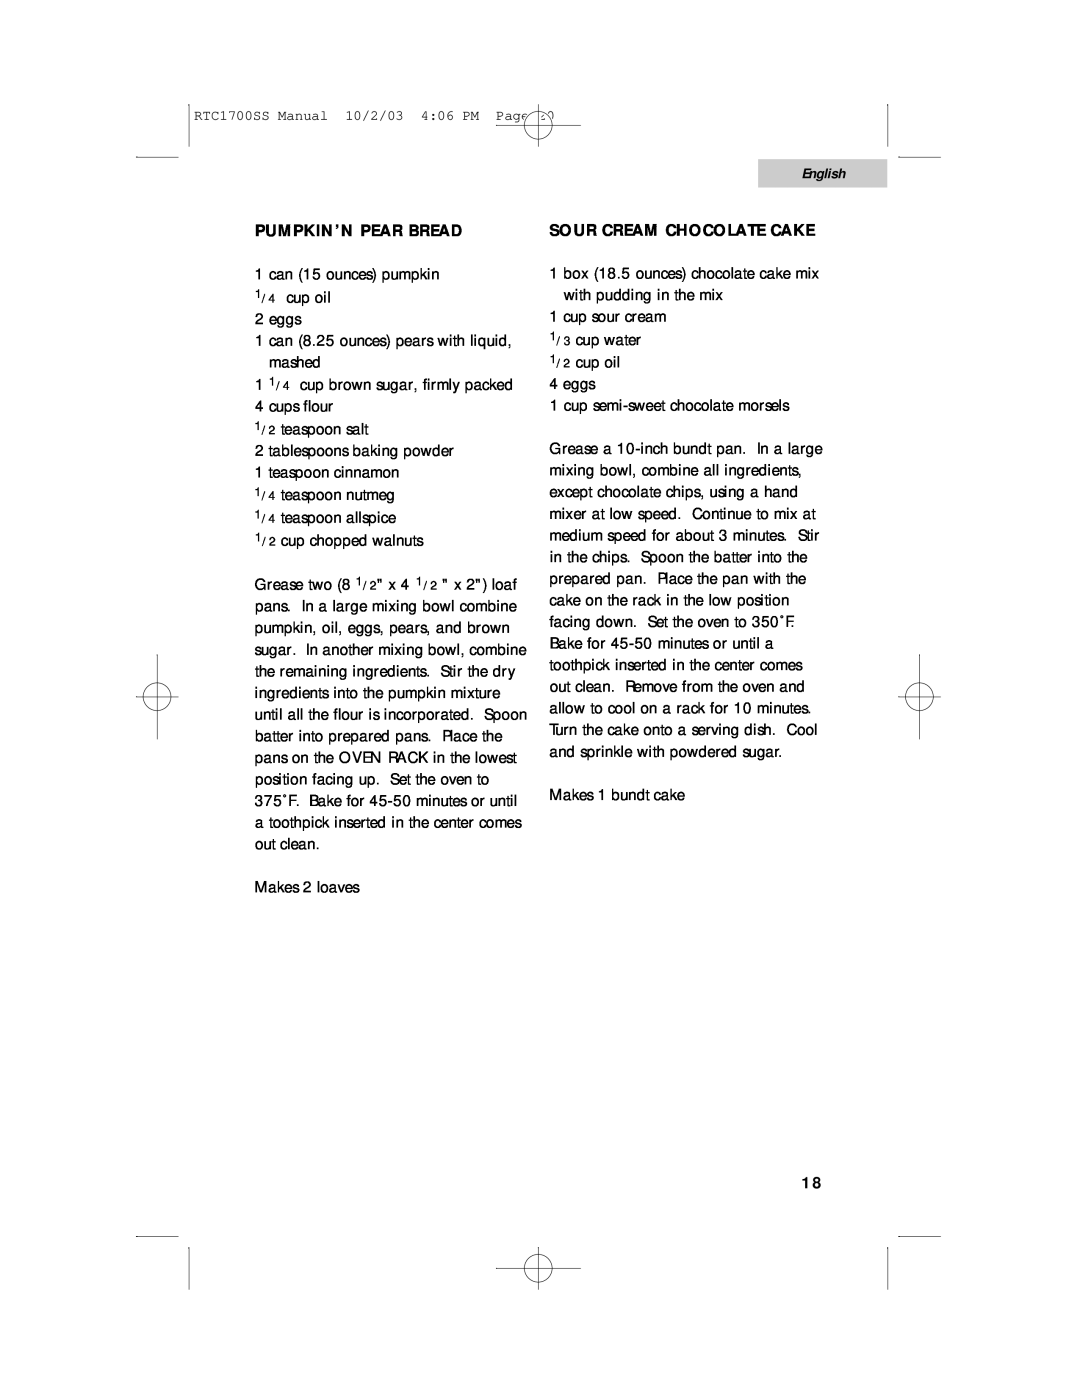 Haier RTC1700SS user manual English, Pumpkin’N Pear Bread, Sour Cream Chocolate Cake 